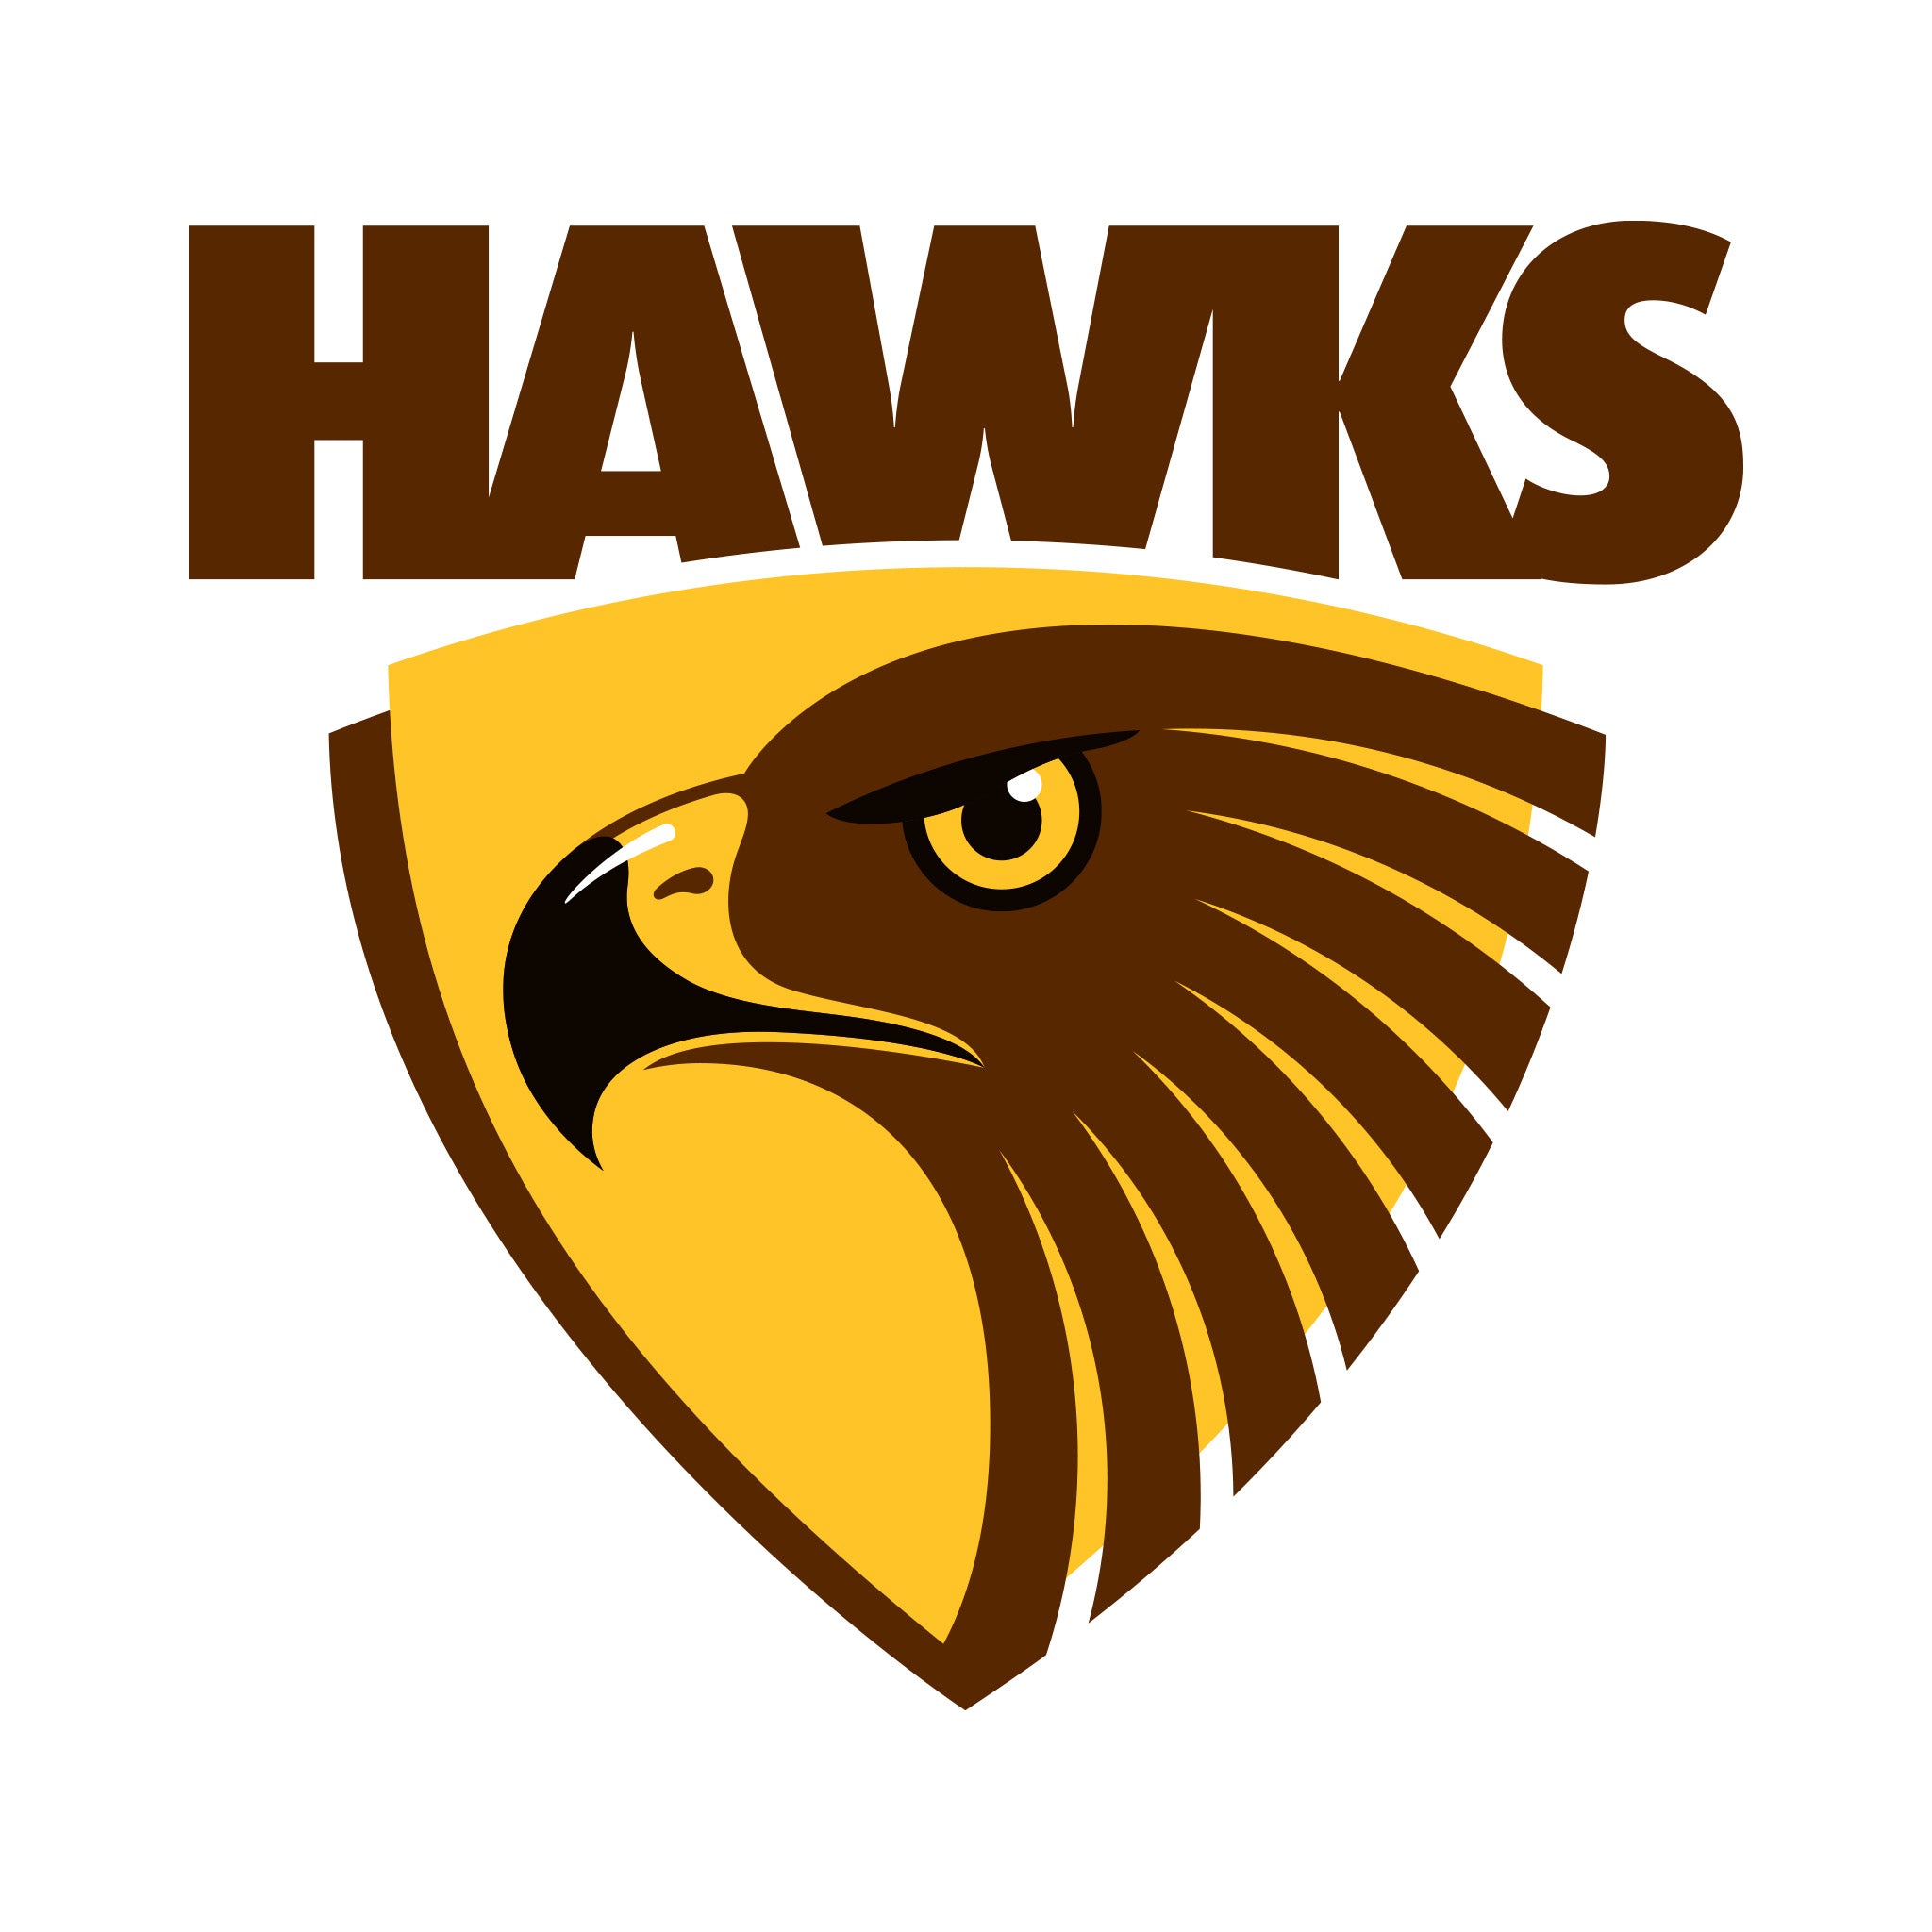 AFL Hawthorn Hawks Merchandise by Ashtabula